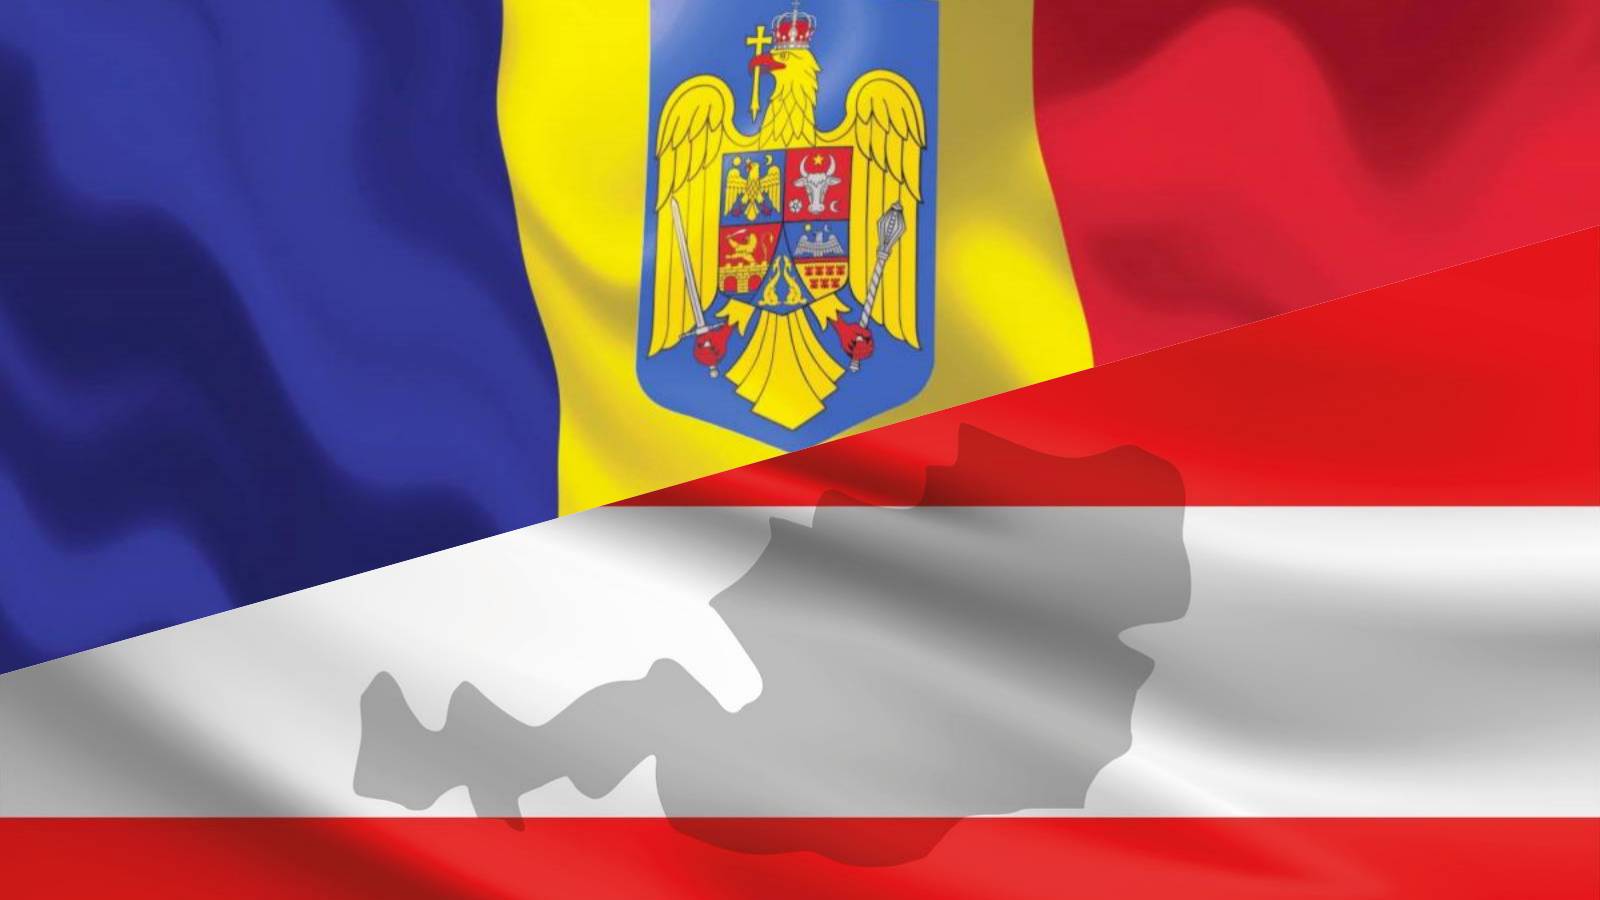 Austria PREMUTO Continua Annunci IMPORTANTI sull'adesione della Romania a Schengen